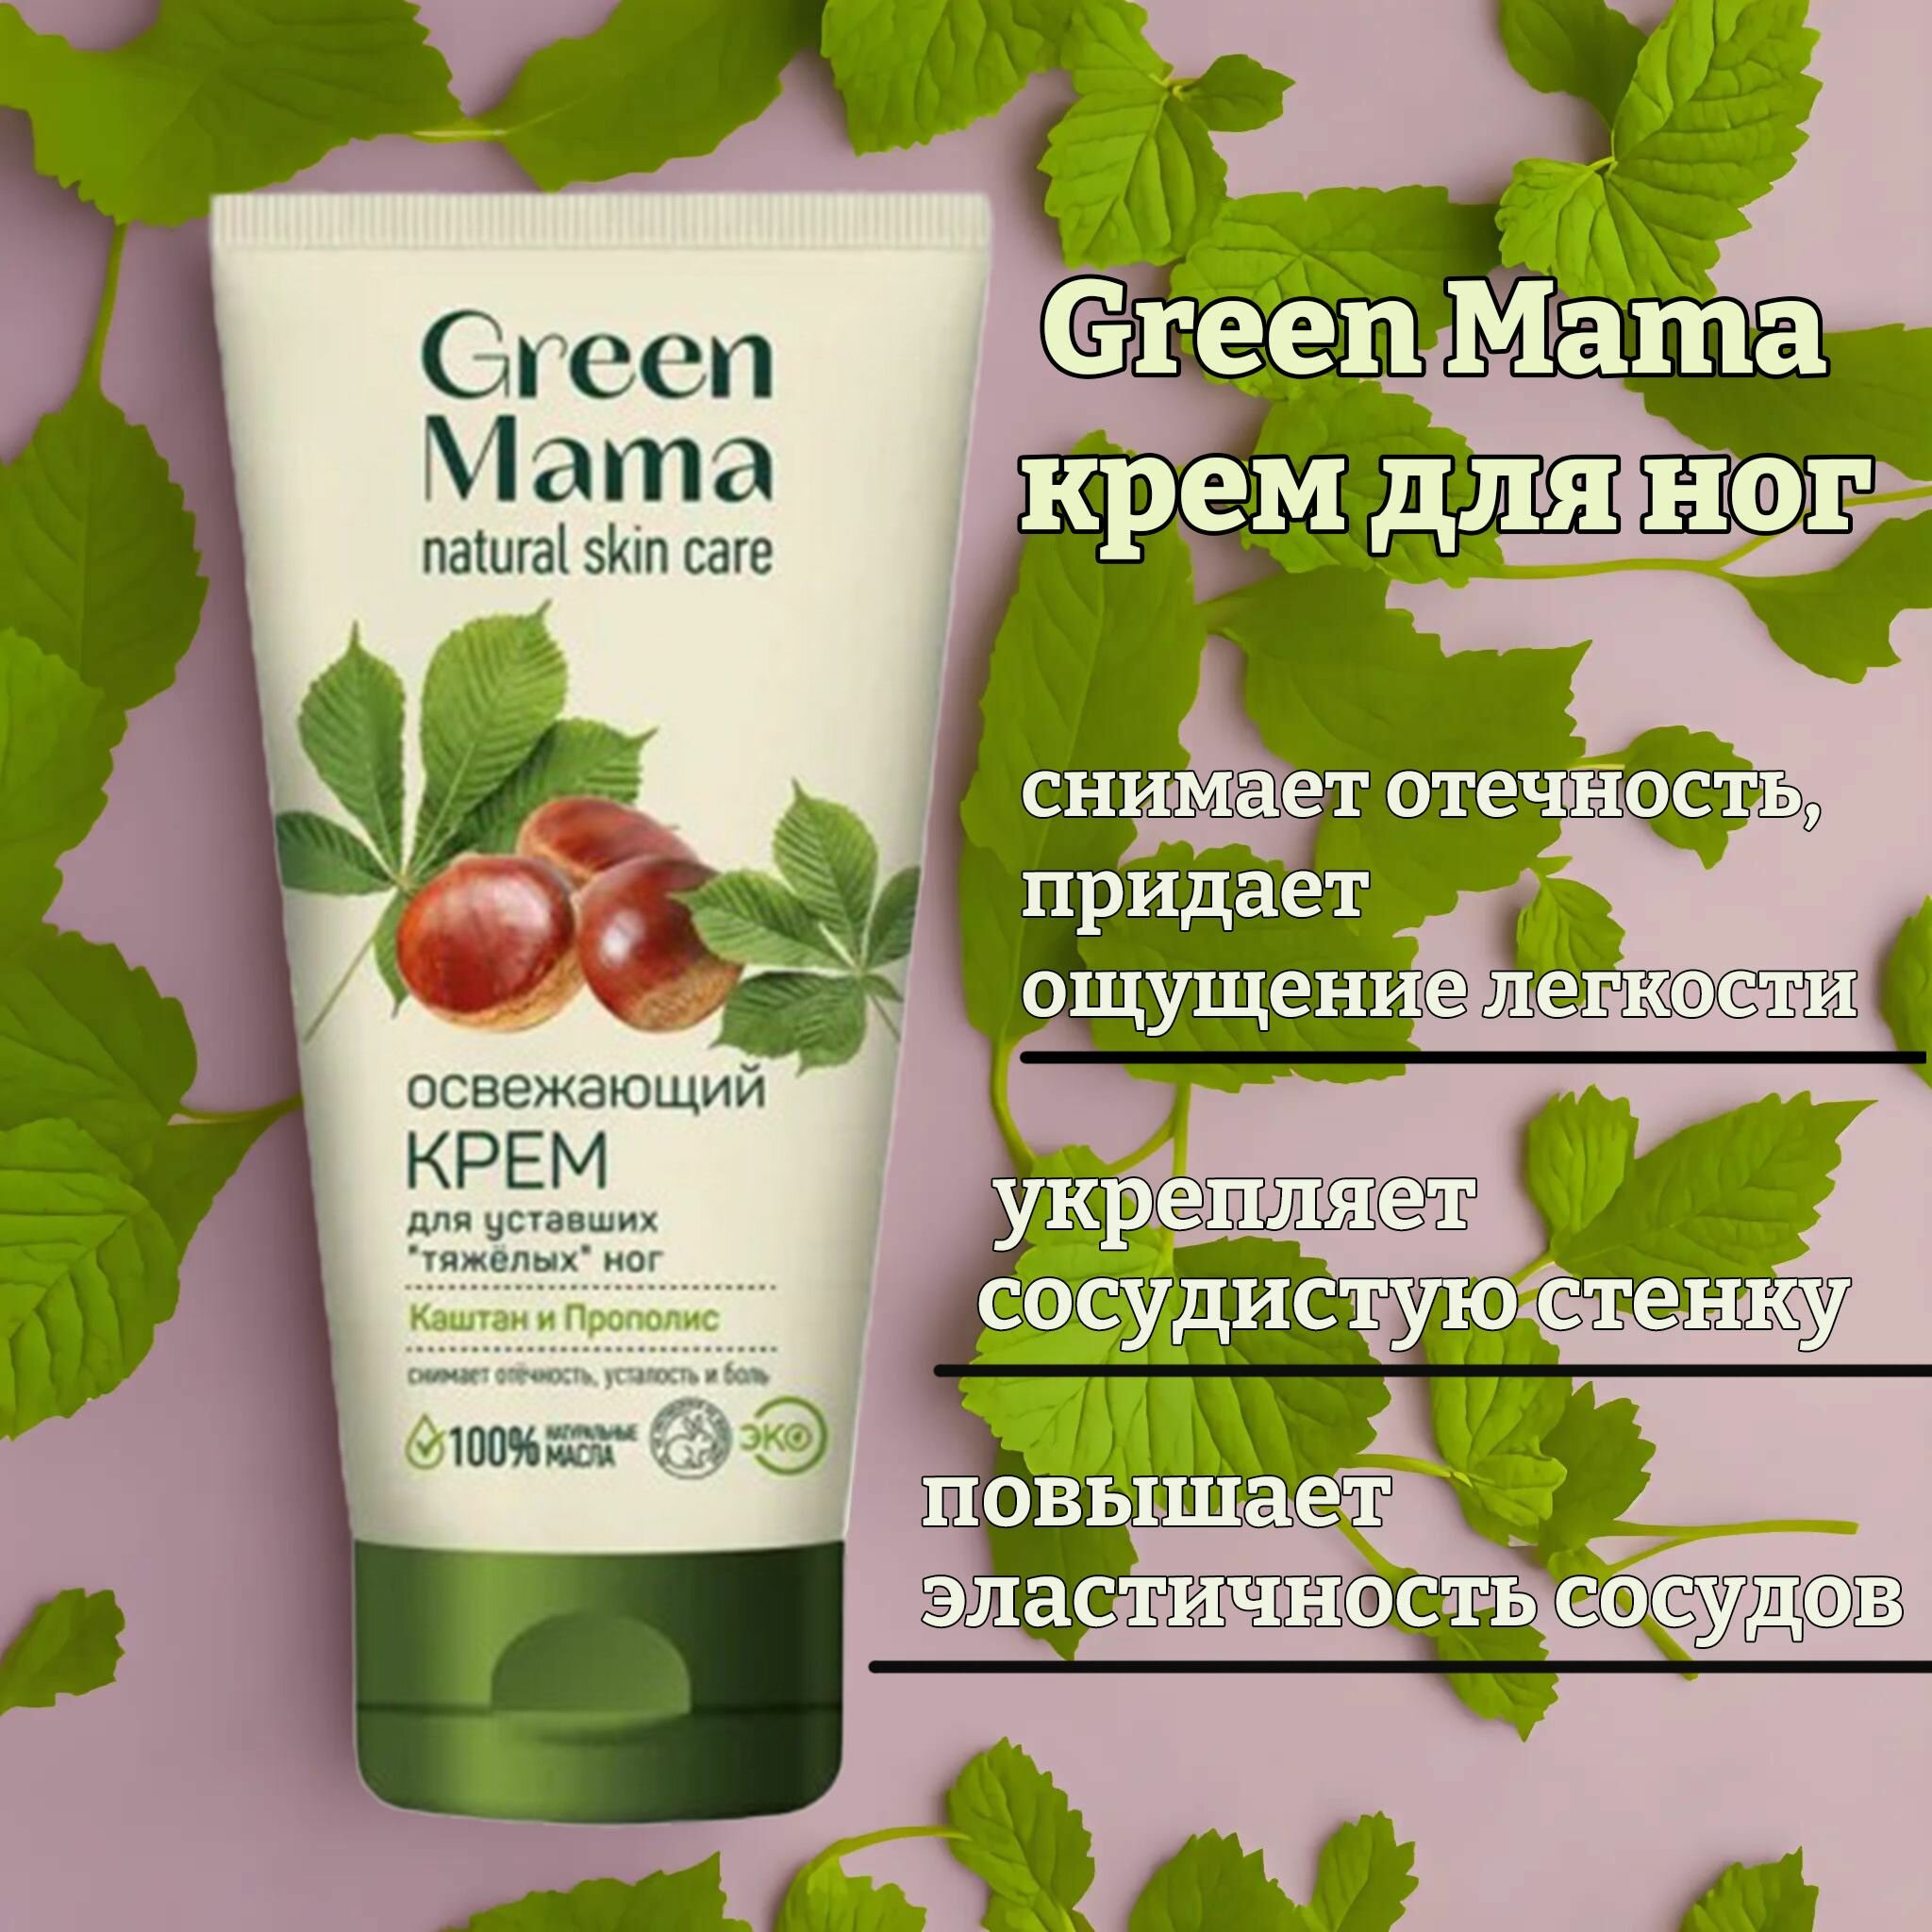 Крем освежающий для уставших "тяжёлых" ног green mama каштан и прополис